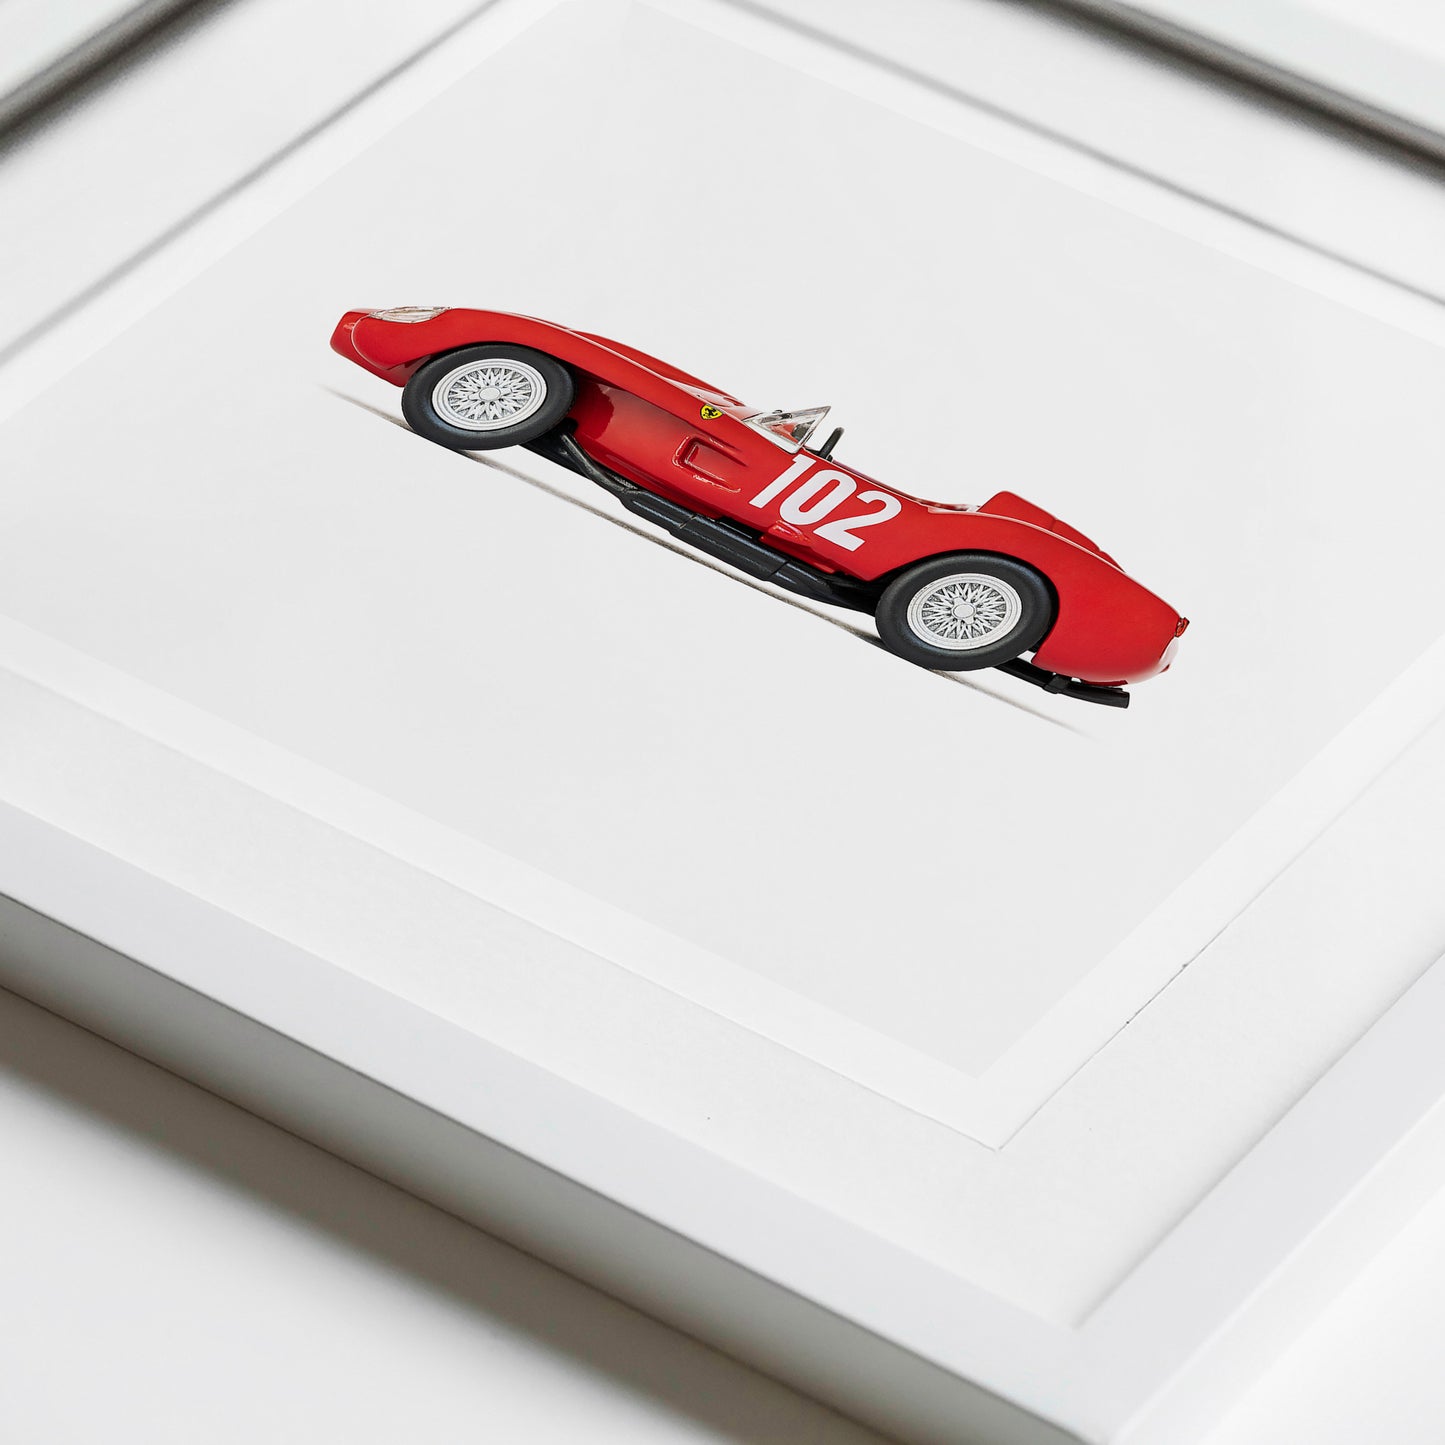 Red Race Car Art nursery Print for boys